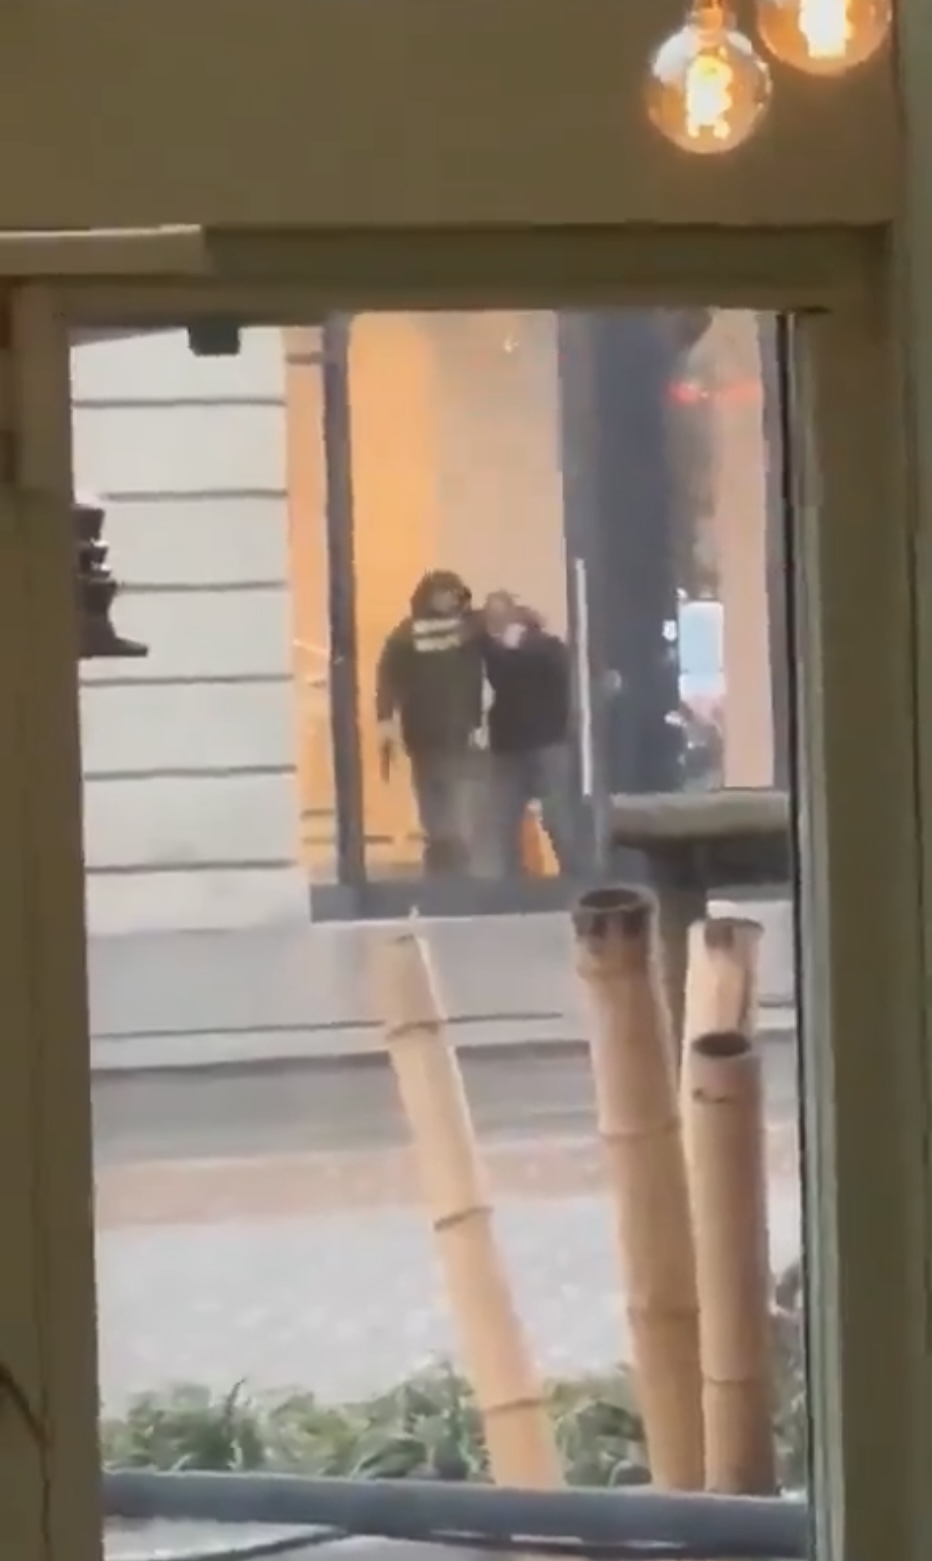 网传影片显示可疑人物手持类似枪的物体，将人质带到窗前。 X